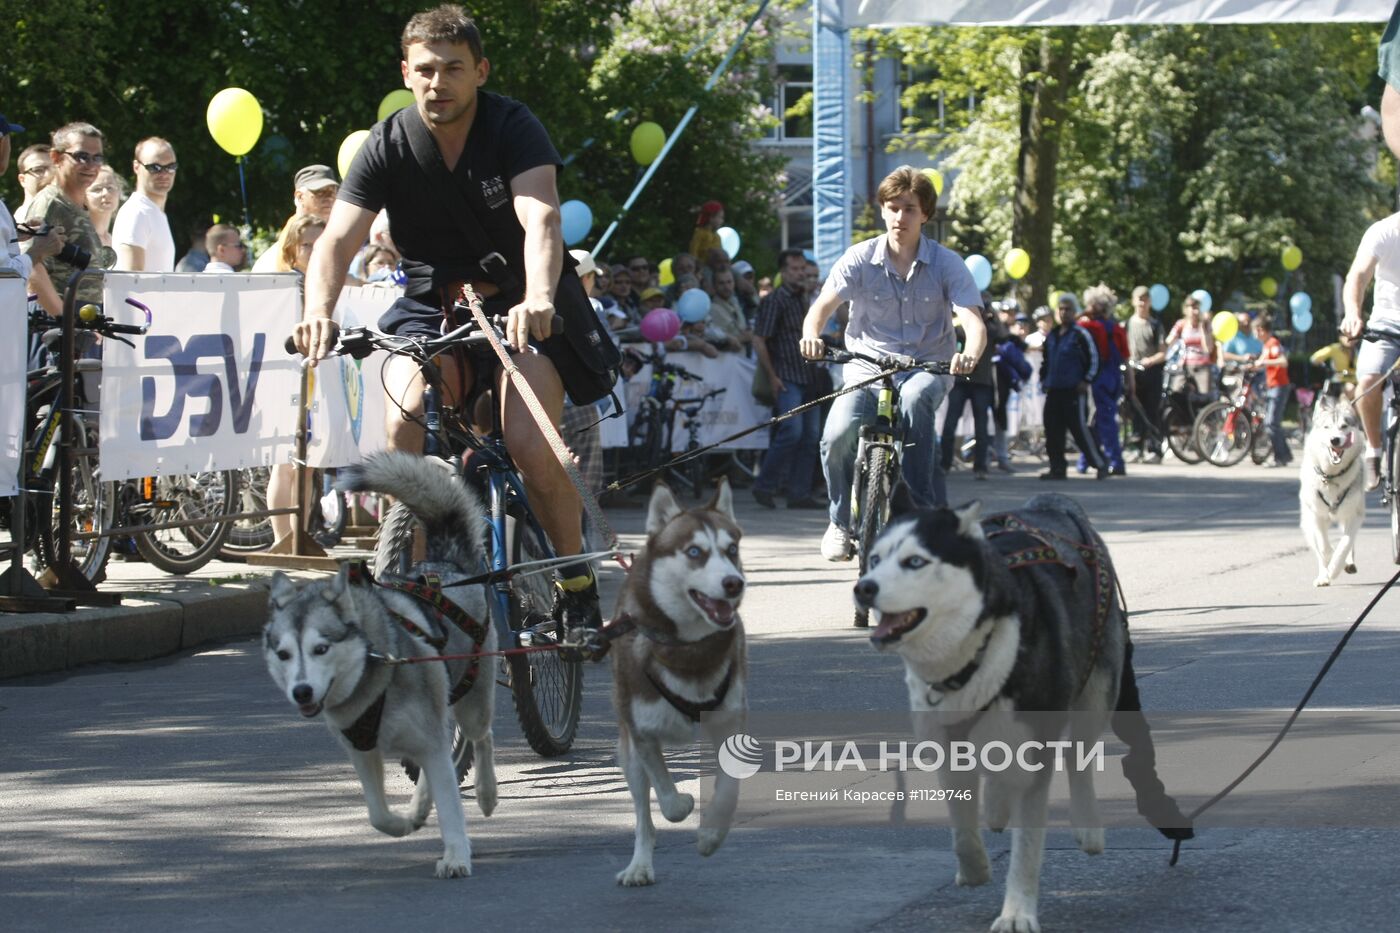 Фестиваль "День колеса" в Калининграде